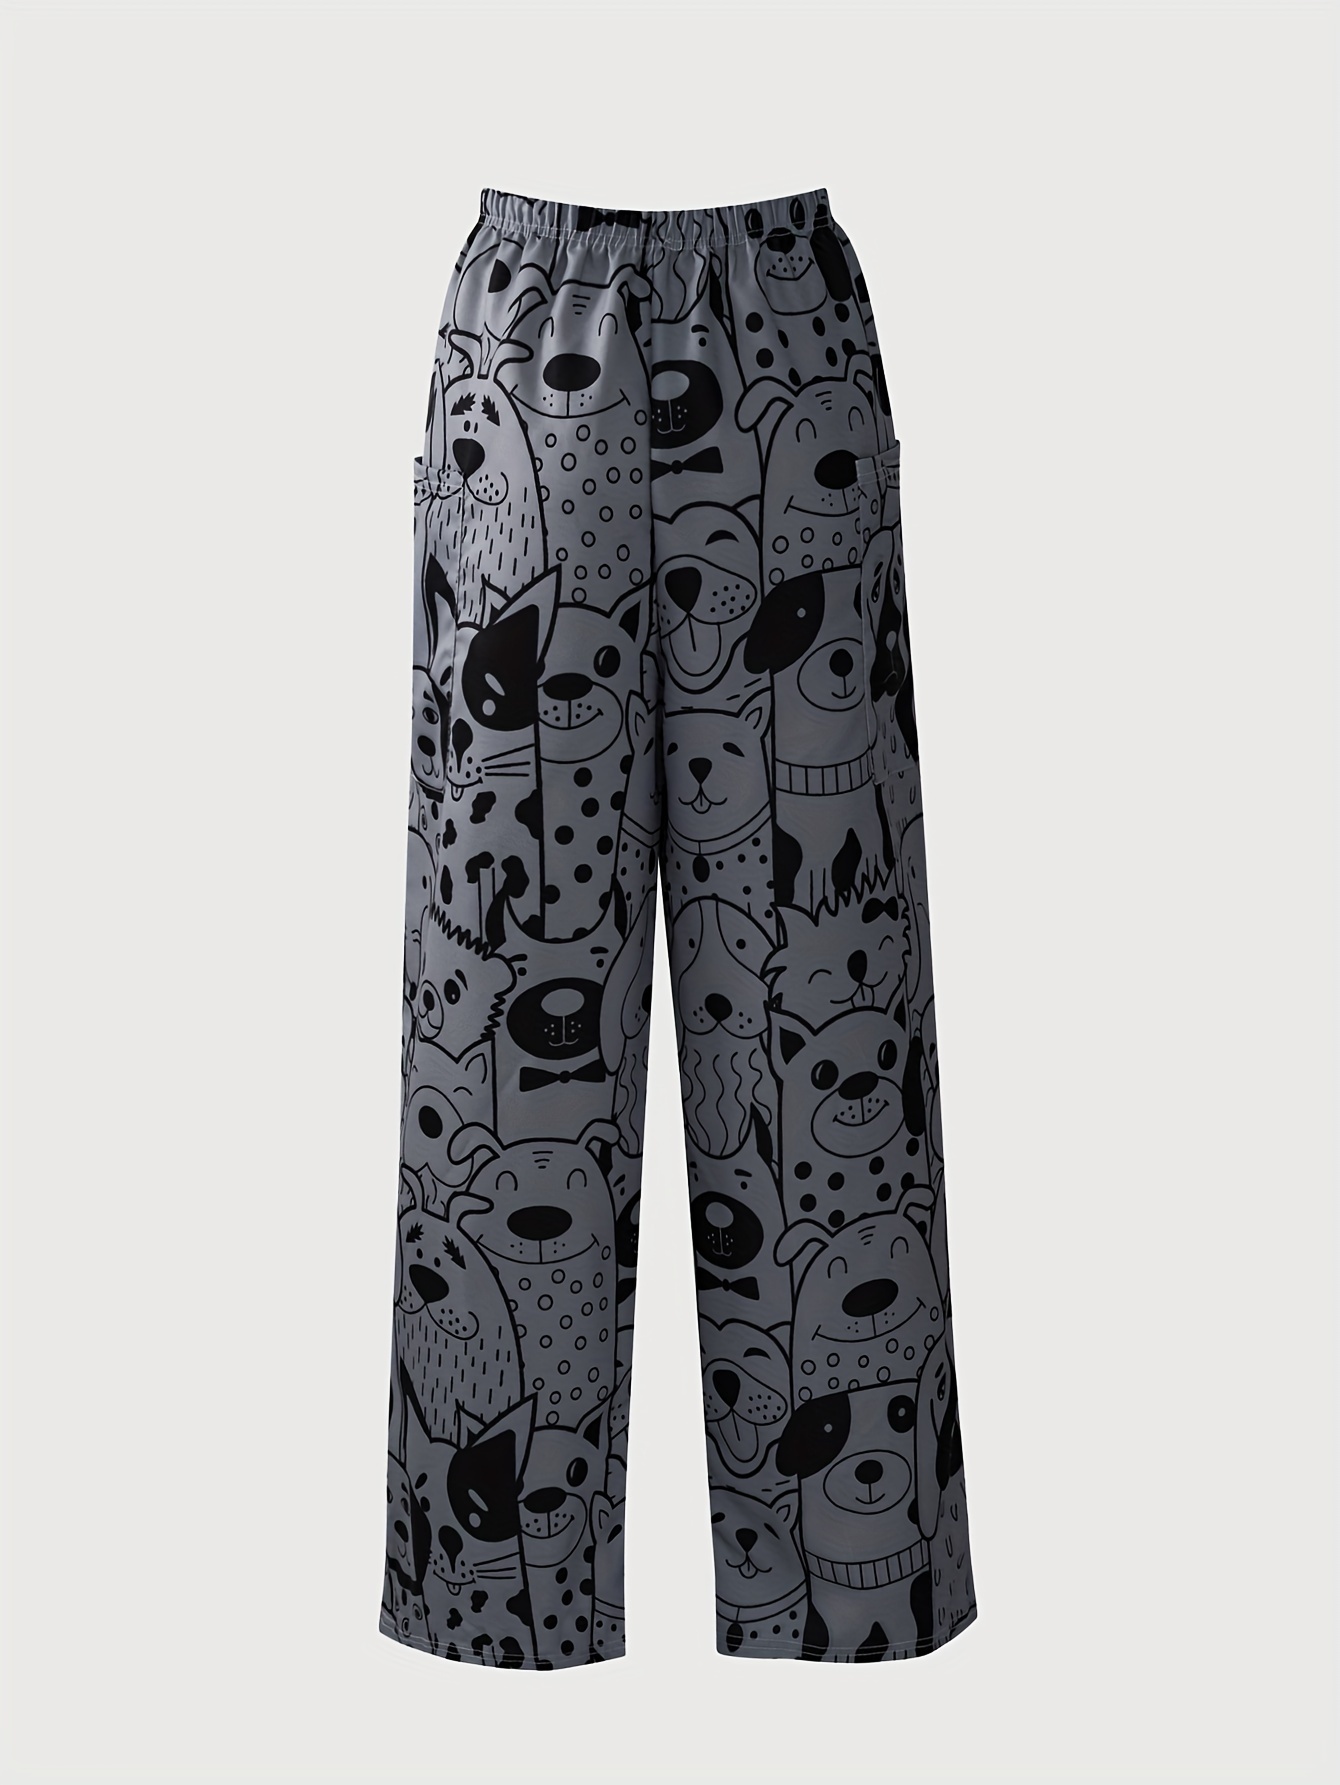 Black Leopard Animal Printed Wide Leg Pants Women's Size XL/XXL New -  beyond exchange